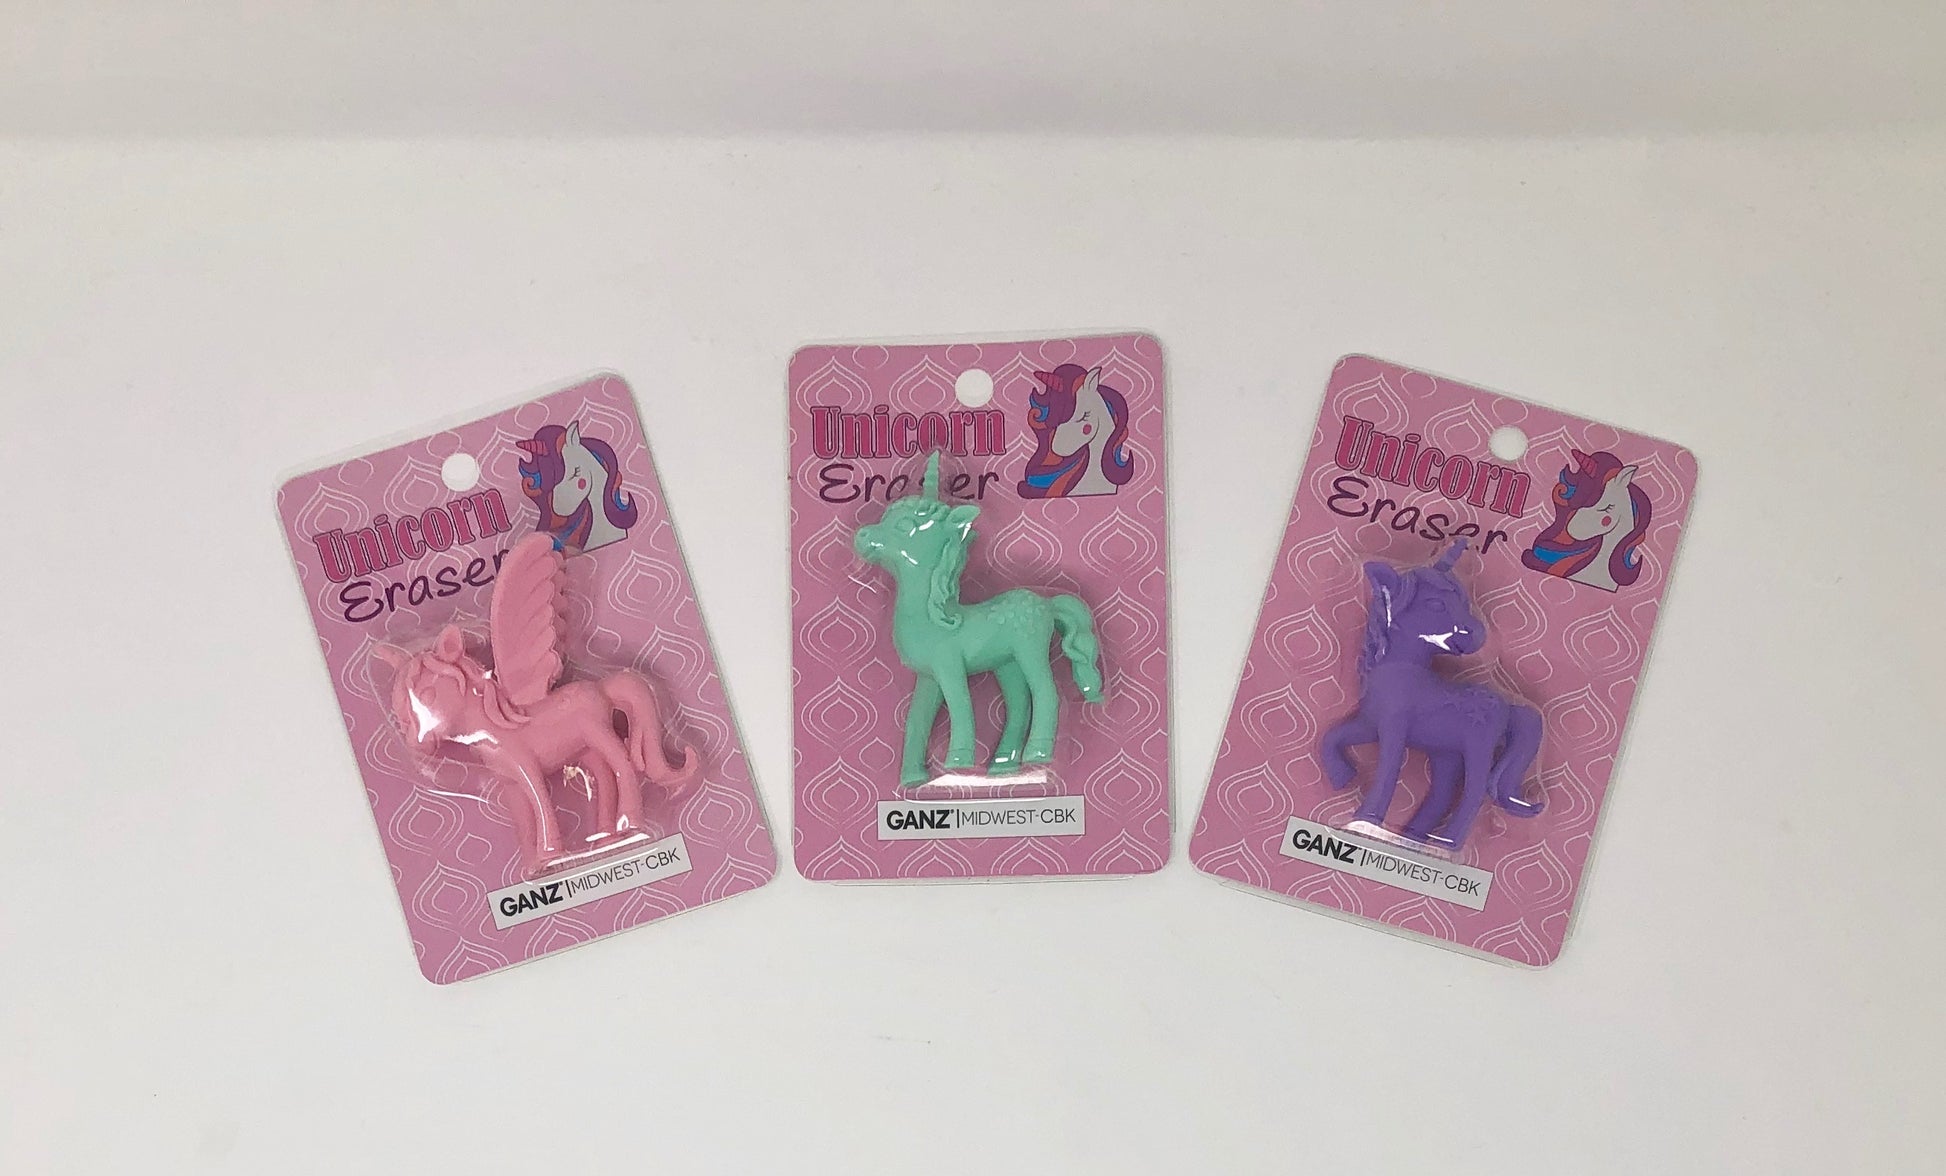 Unicorn Eraser Gifts Baby Ganz   